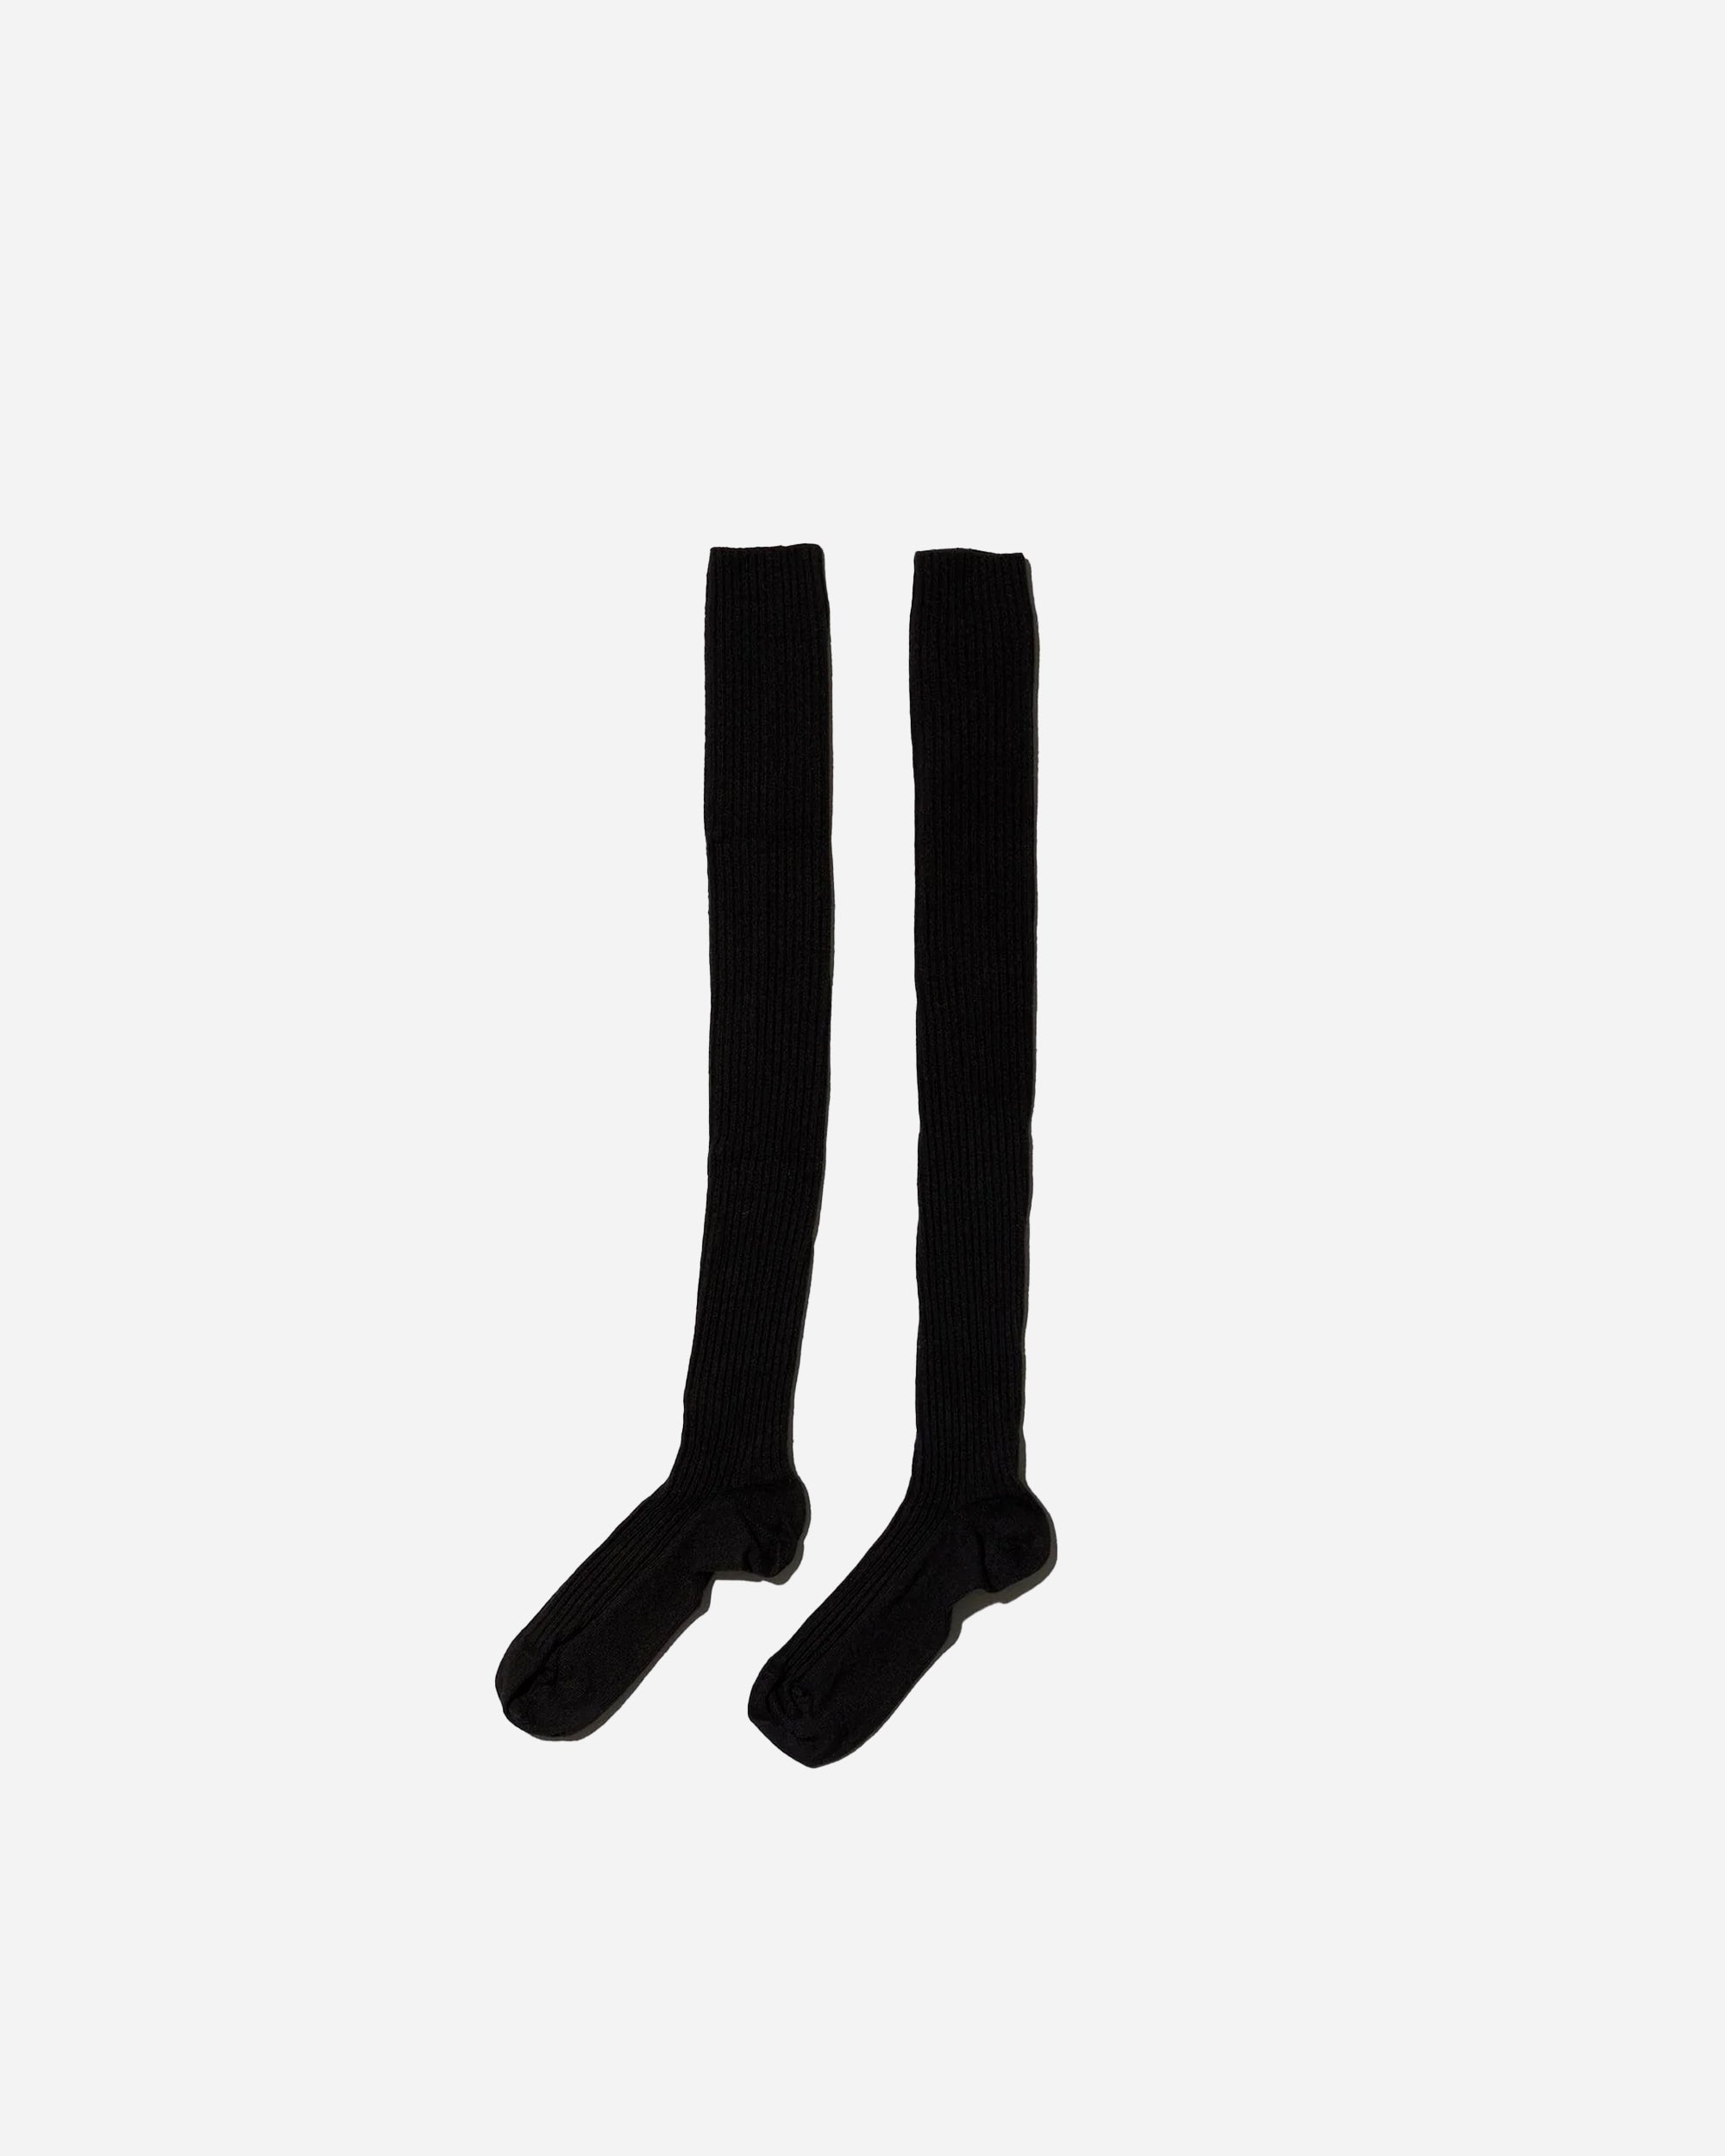 Overknee socks